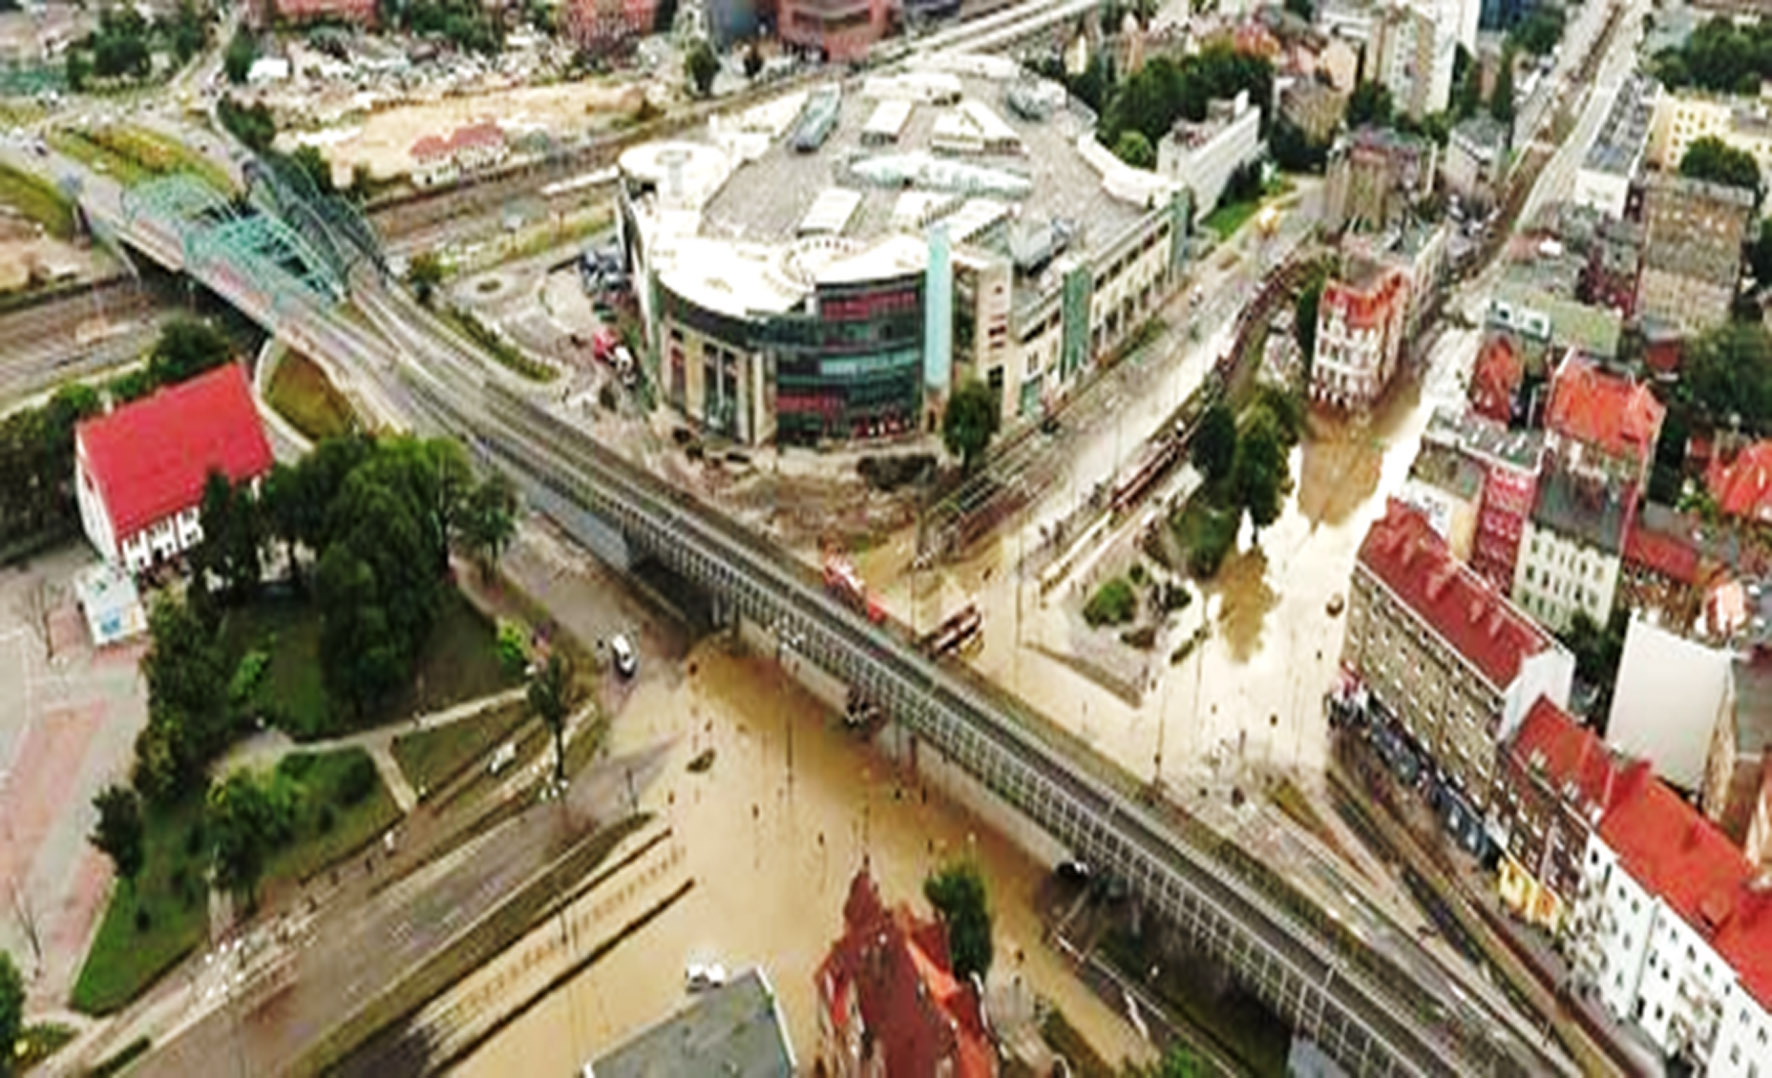 Rzeczywisty zasięg podtopień w rejonie Galerii Bałtyckiej w trakcie powodzi miejskiej w 2016 roku kilkanaście godzin po osiągnięciu maksymalnego poziomu (https://www.youtube.com/watch?v=HfcUAbncvOo). 